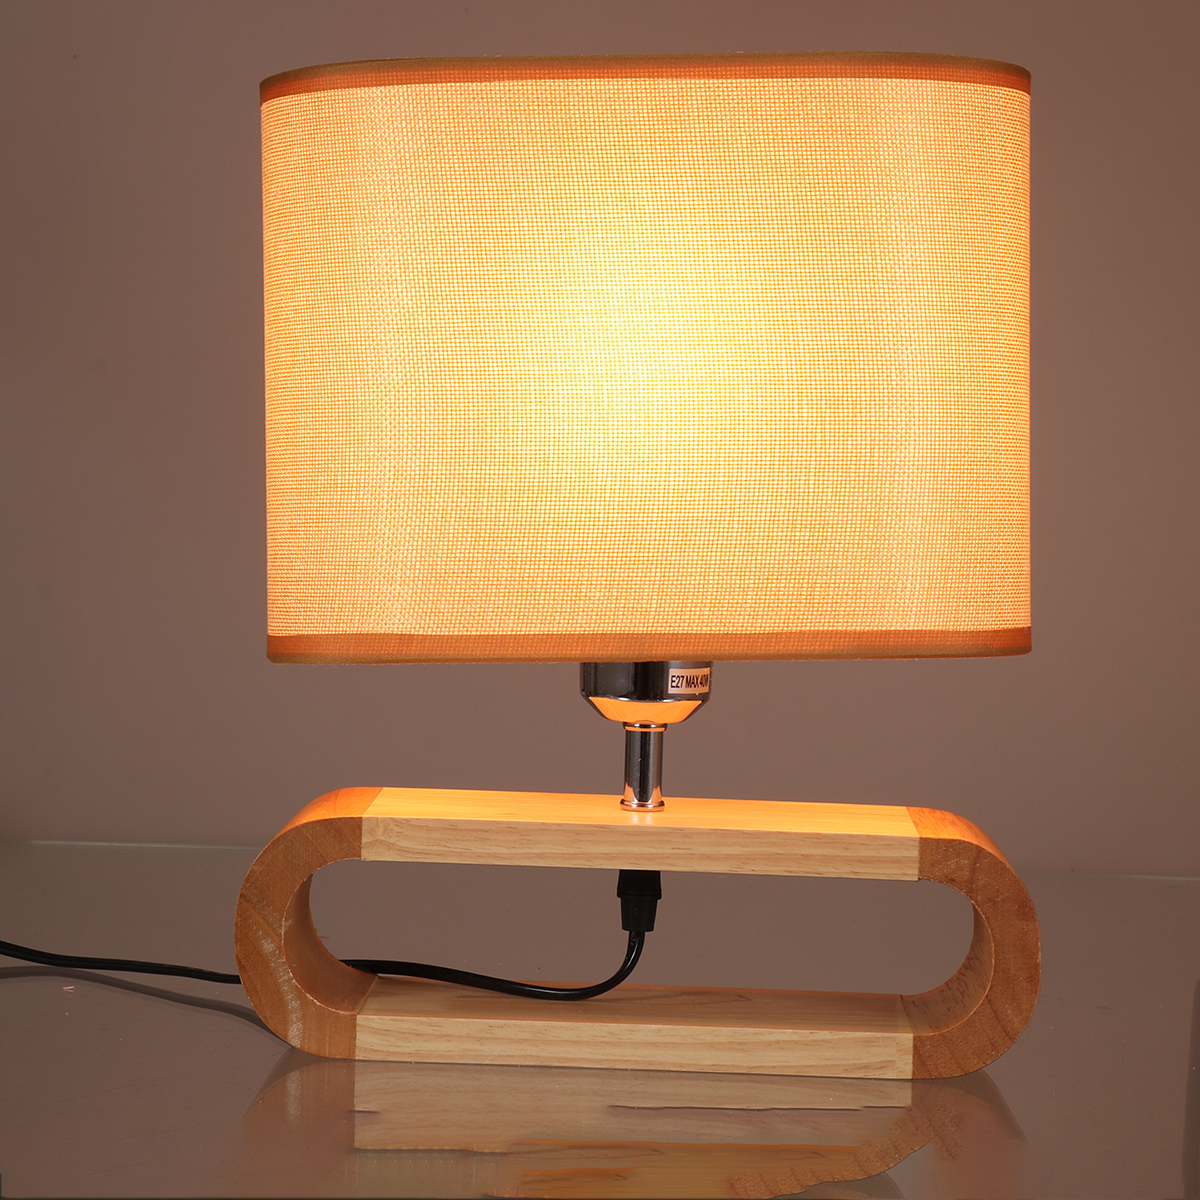 Wooden-Modern-Table-Lamp-Timber-Bedside-Lighting-Desk-Reading-Light-Brown-White-85-265V-1744461-4